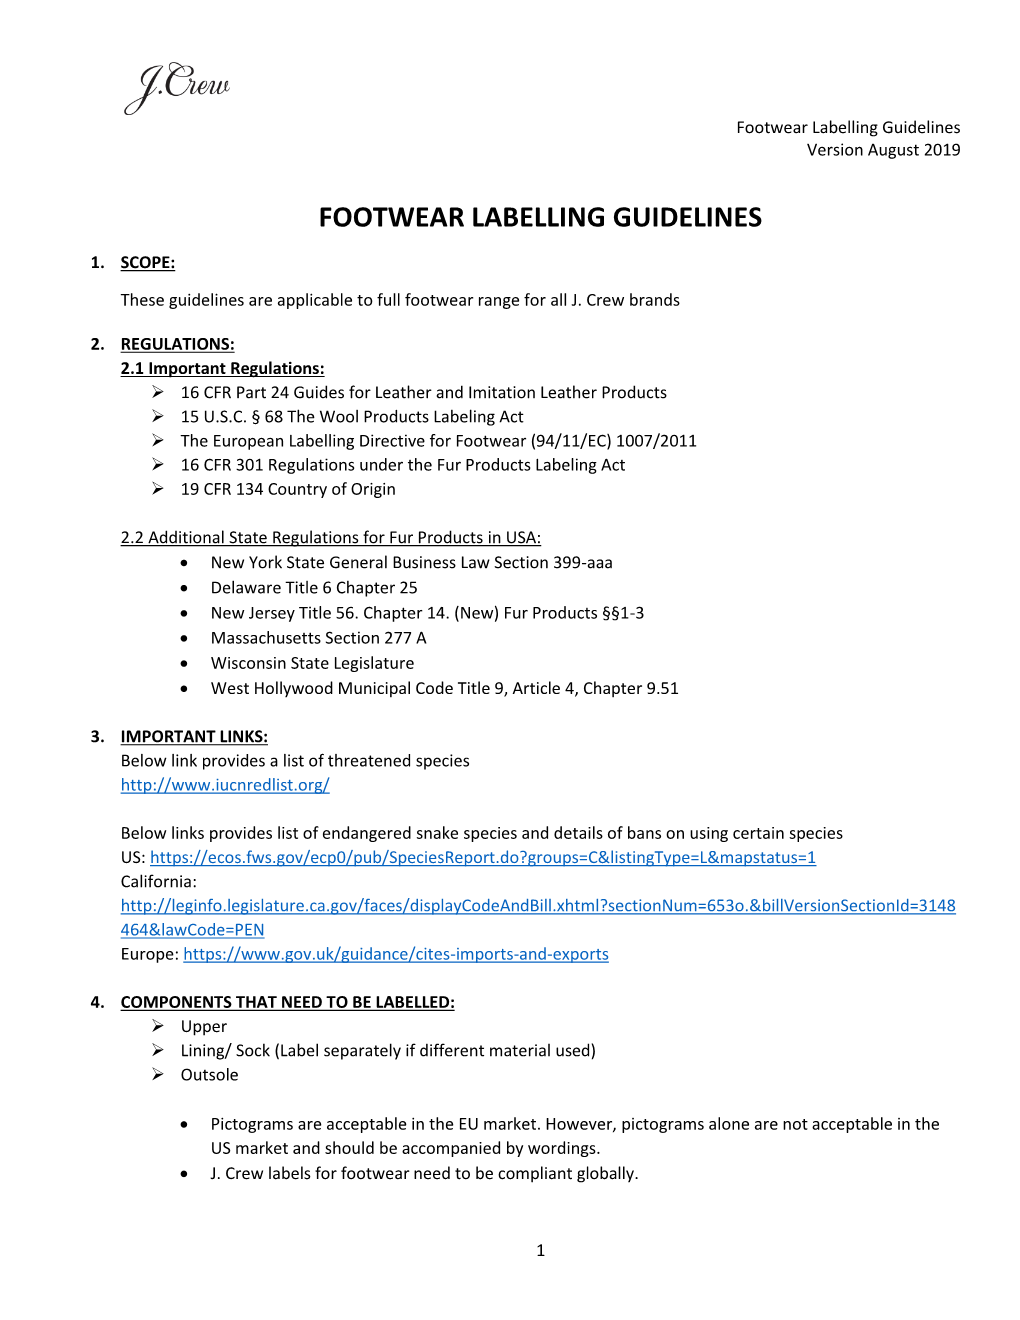 Footwear Labelling Guidelines Version August 2019